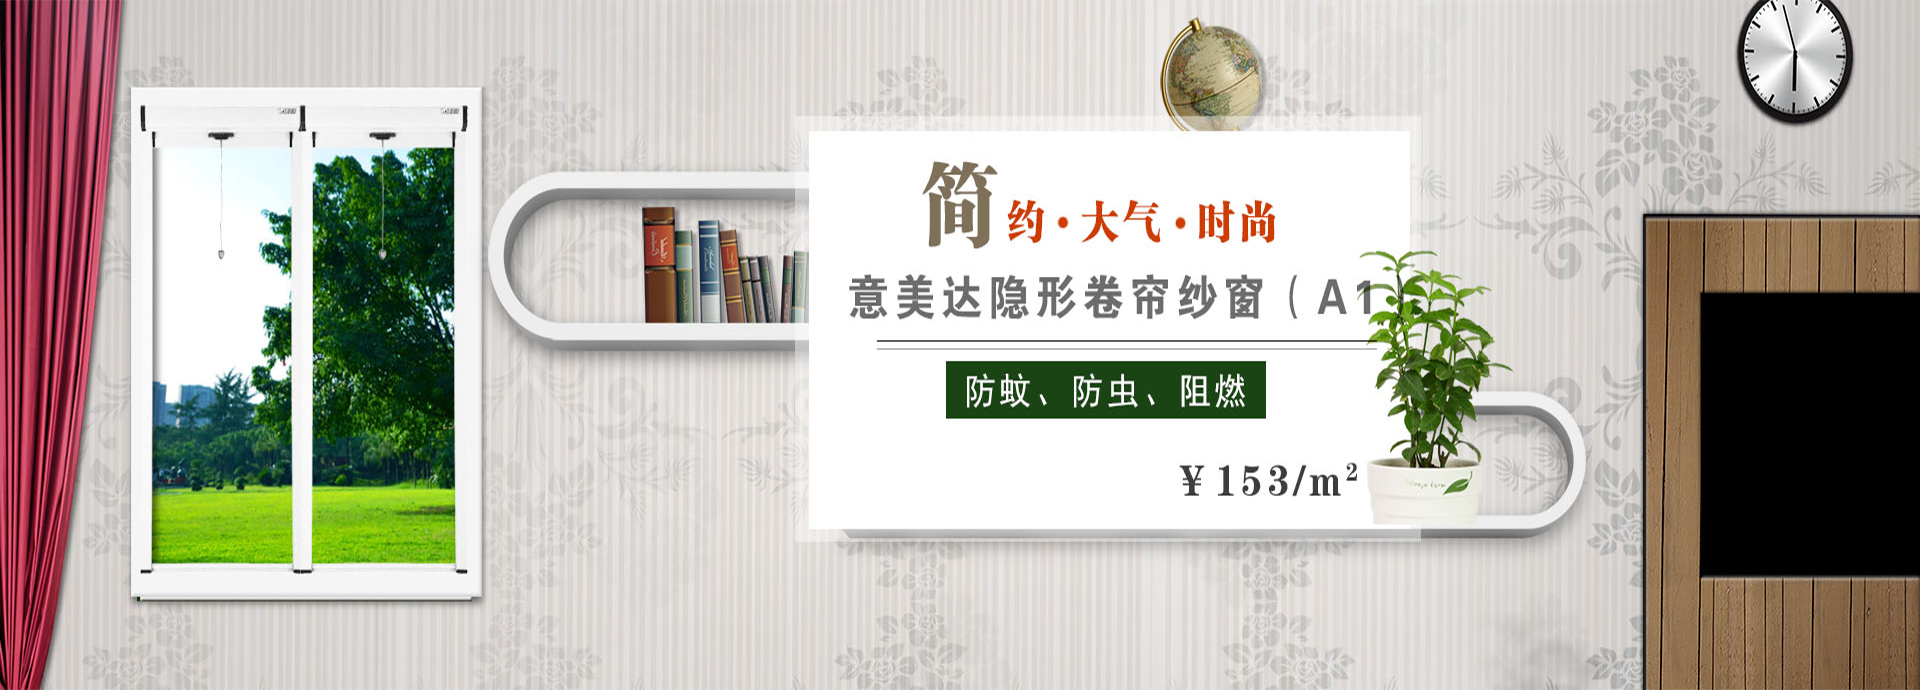 龙8-long8(中国)唯一官方网站_产品1764